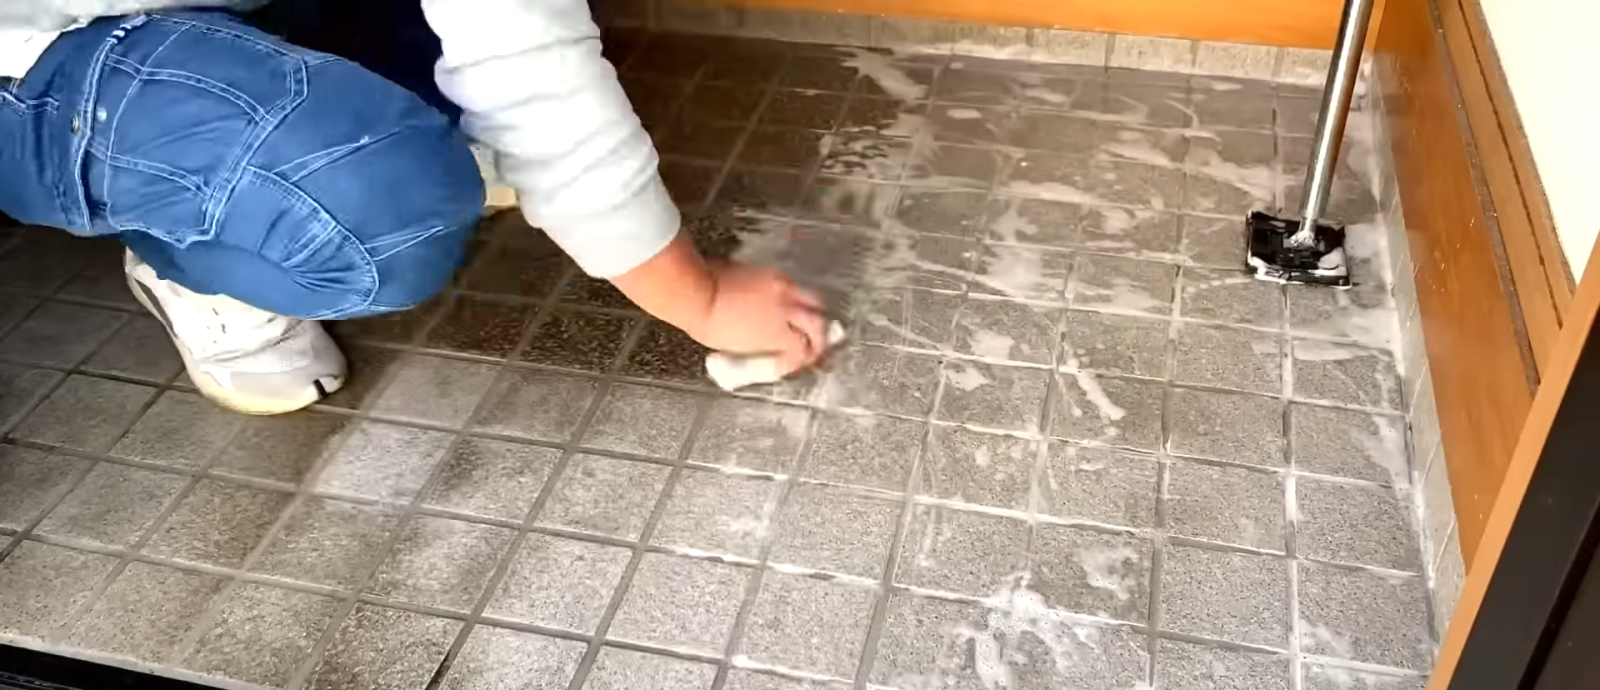 玄関の床掃除をする男性